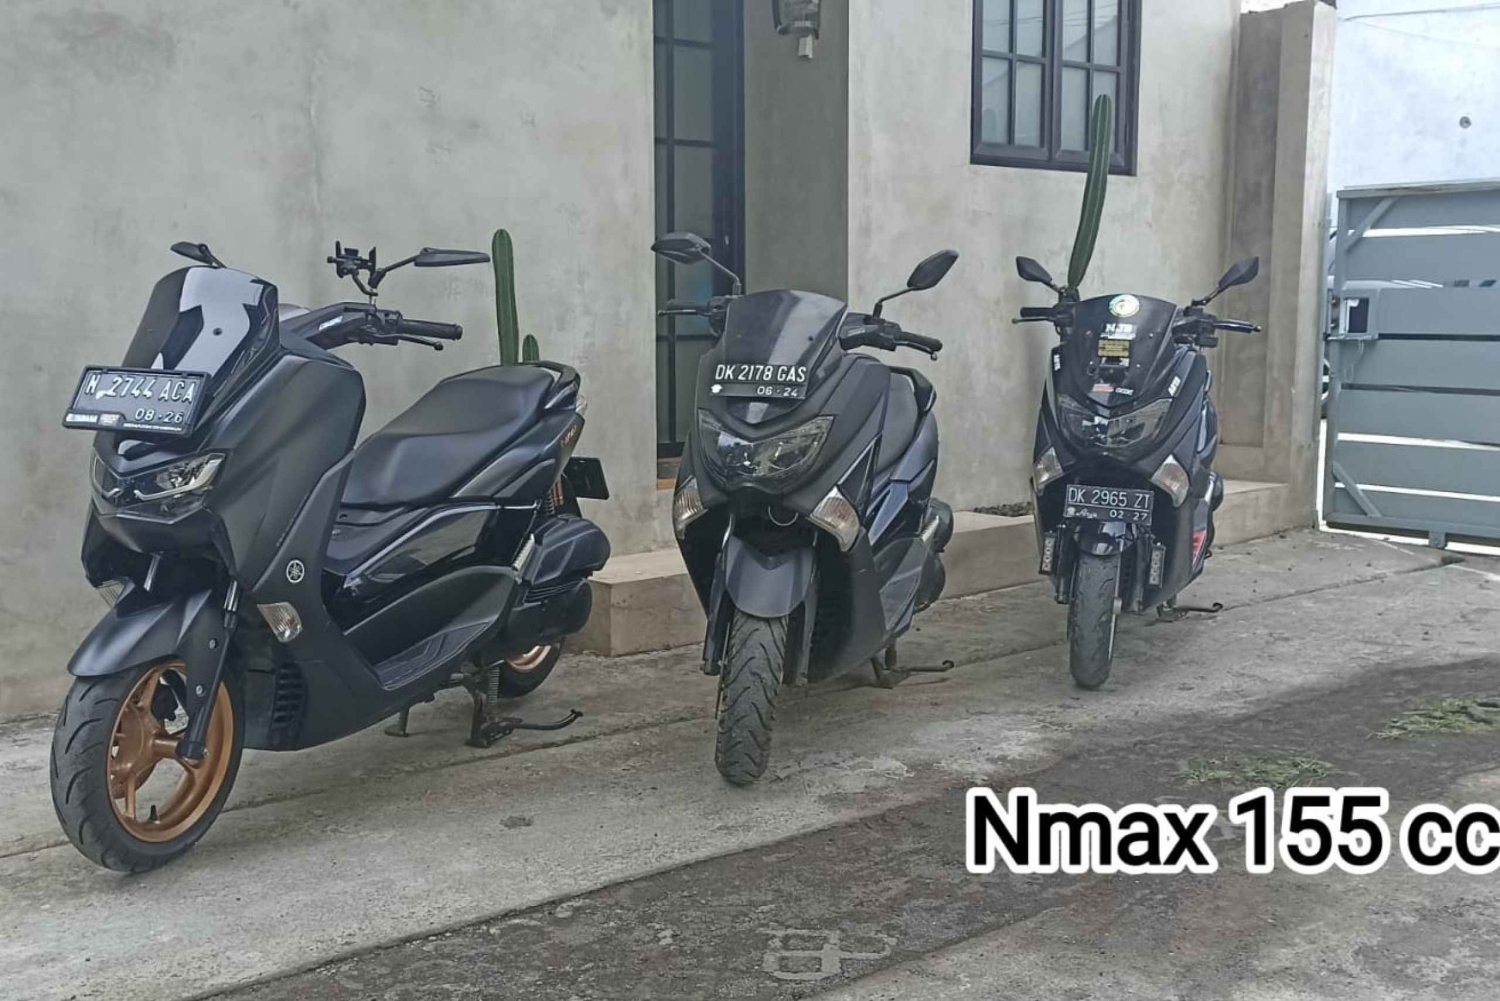 Bali: 2-7-dniowy wynajem skuterów Xmax 250 cm3/ Nmax 150 cm3/ Scoopy